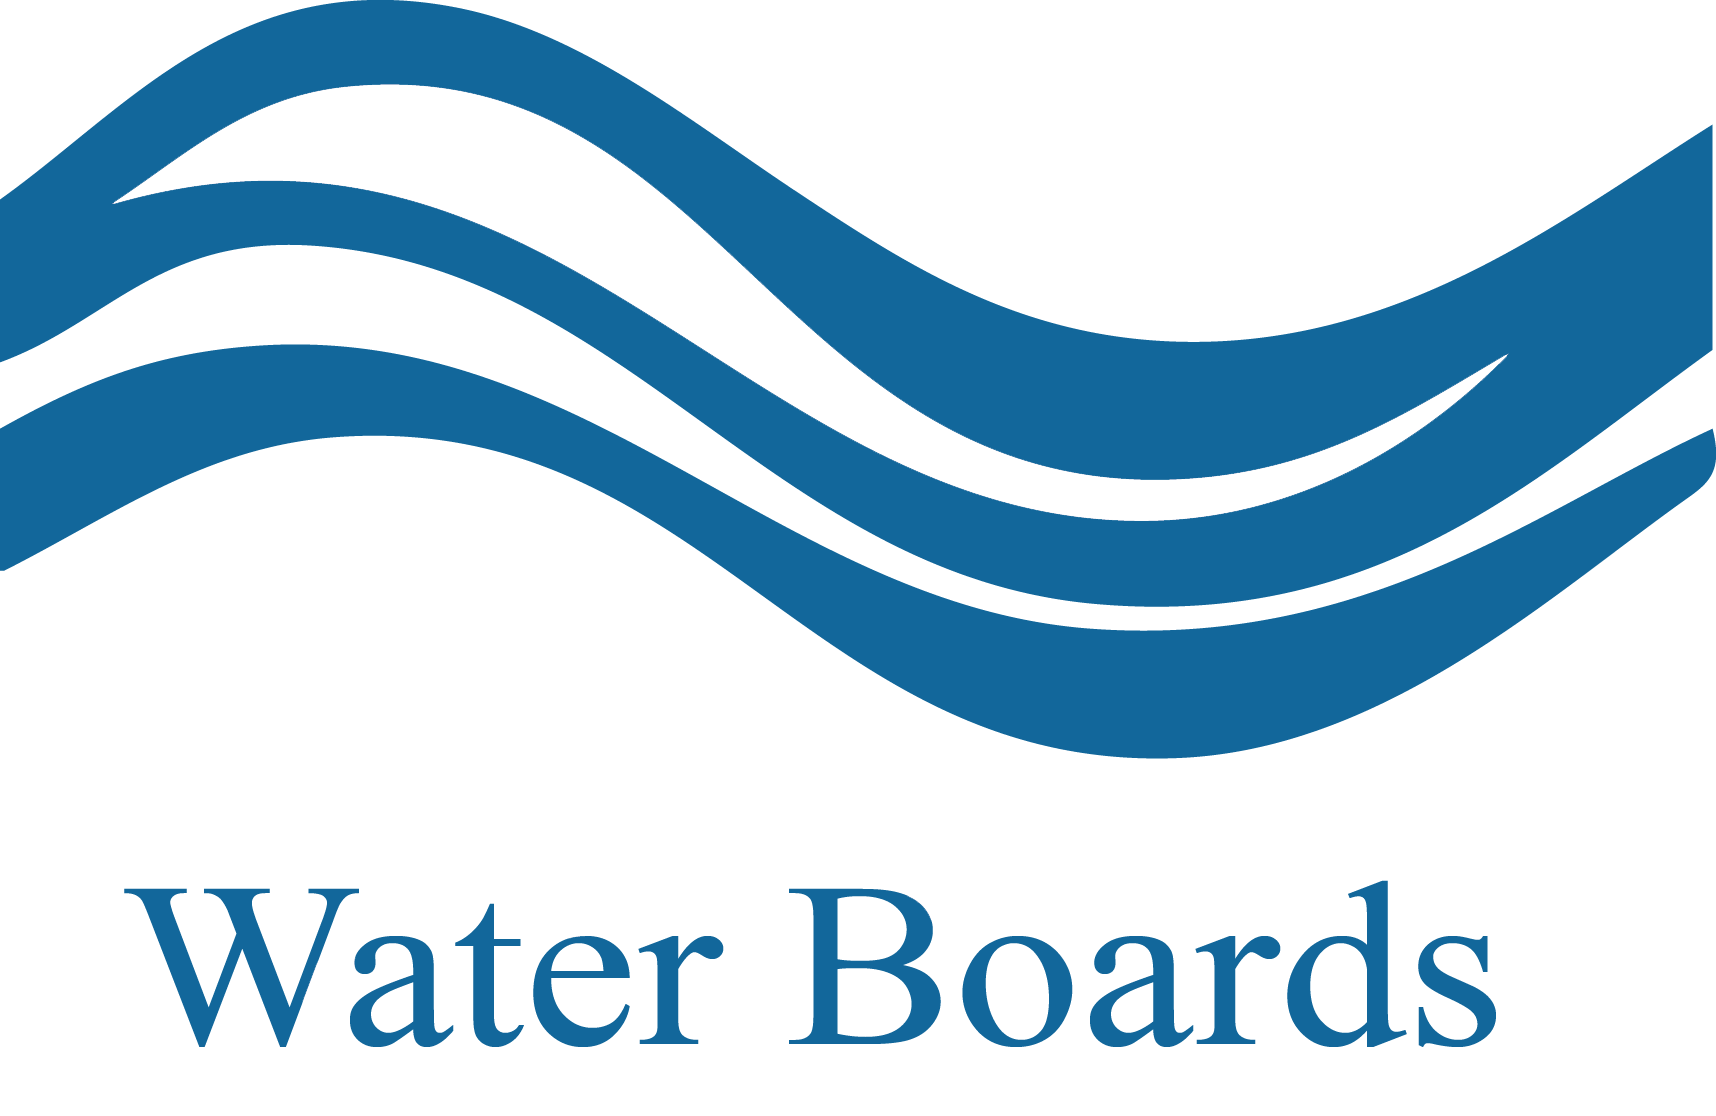 Water Boards logo